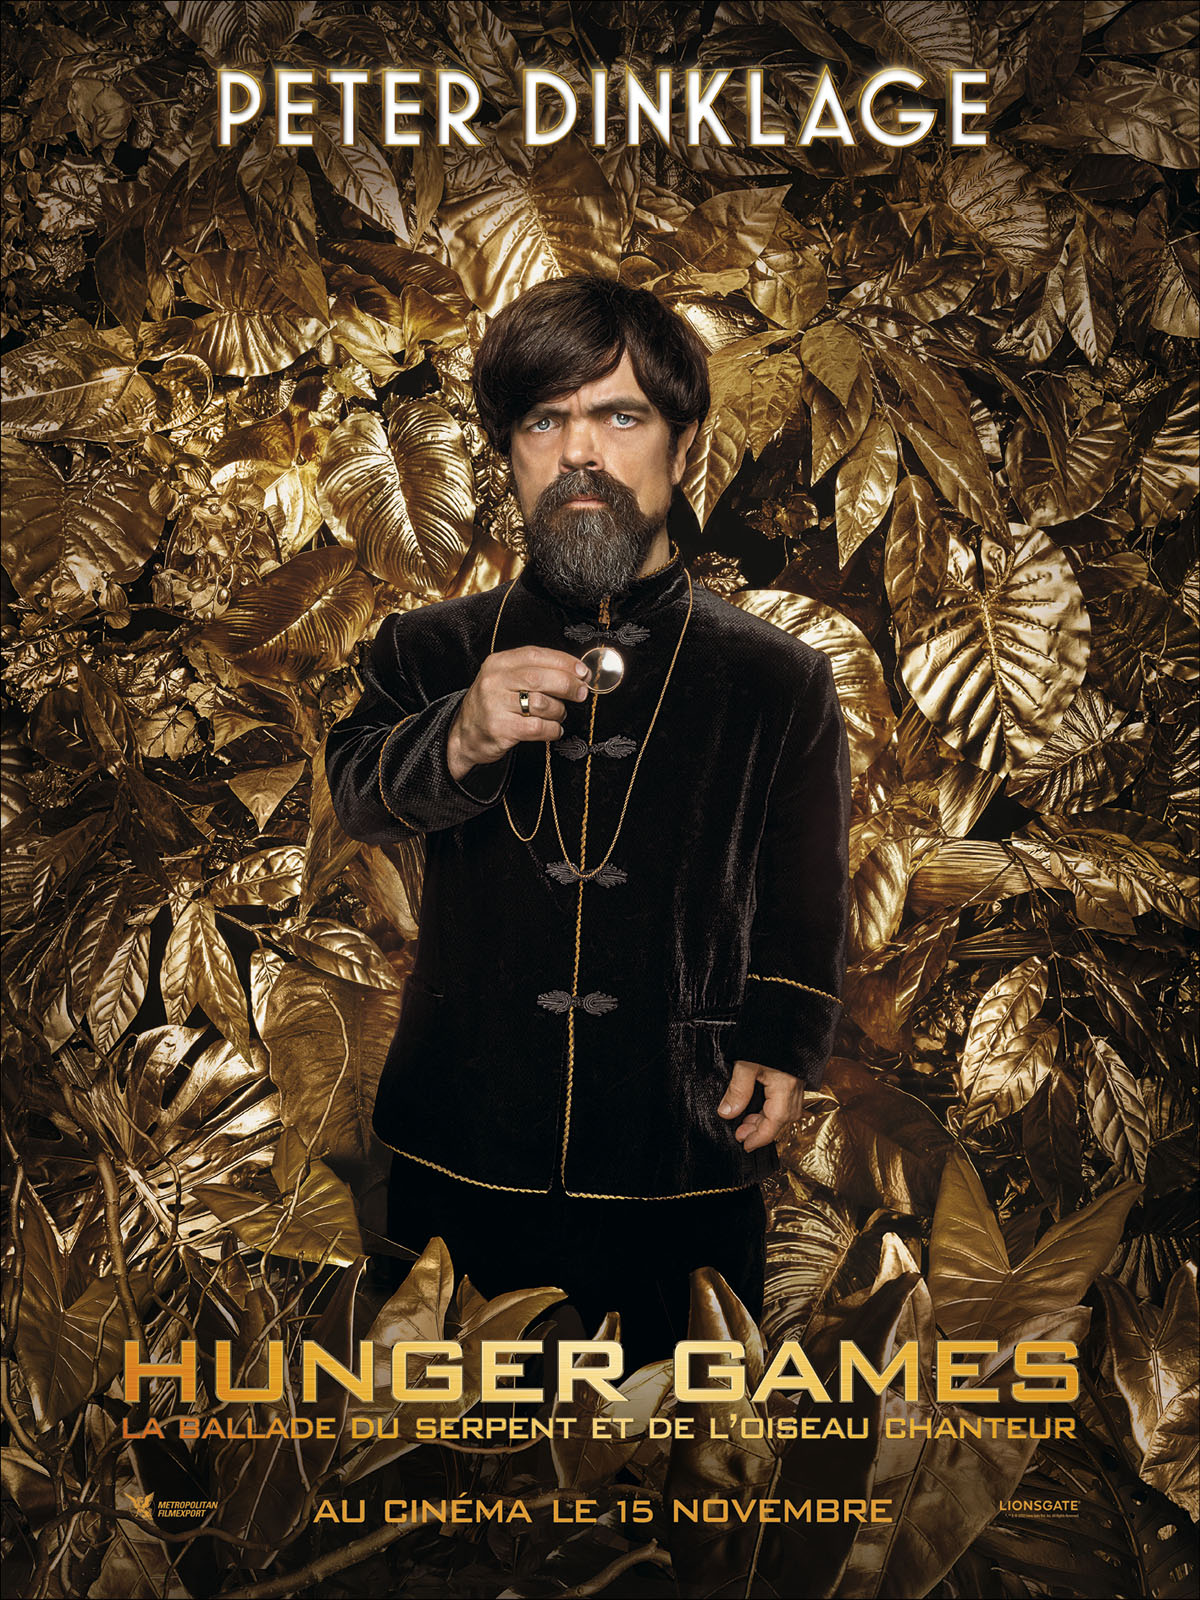 Etoile Cinémas Béthune - 💥 𝗝𝗘𝗨 𝗖𝗢𝗡𝗖𝗢𝗨𝗥𝗦 - Hunger games : la  ballade du serpent et de l'oiseau chanteur ‍💥 🎁 A l'occasion de la sortie  en salle du film 𝗛𝘂𝗻𝗴𝗲𝗿 𝗴𝗮𝗺𝗲𝘀